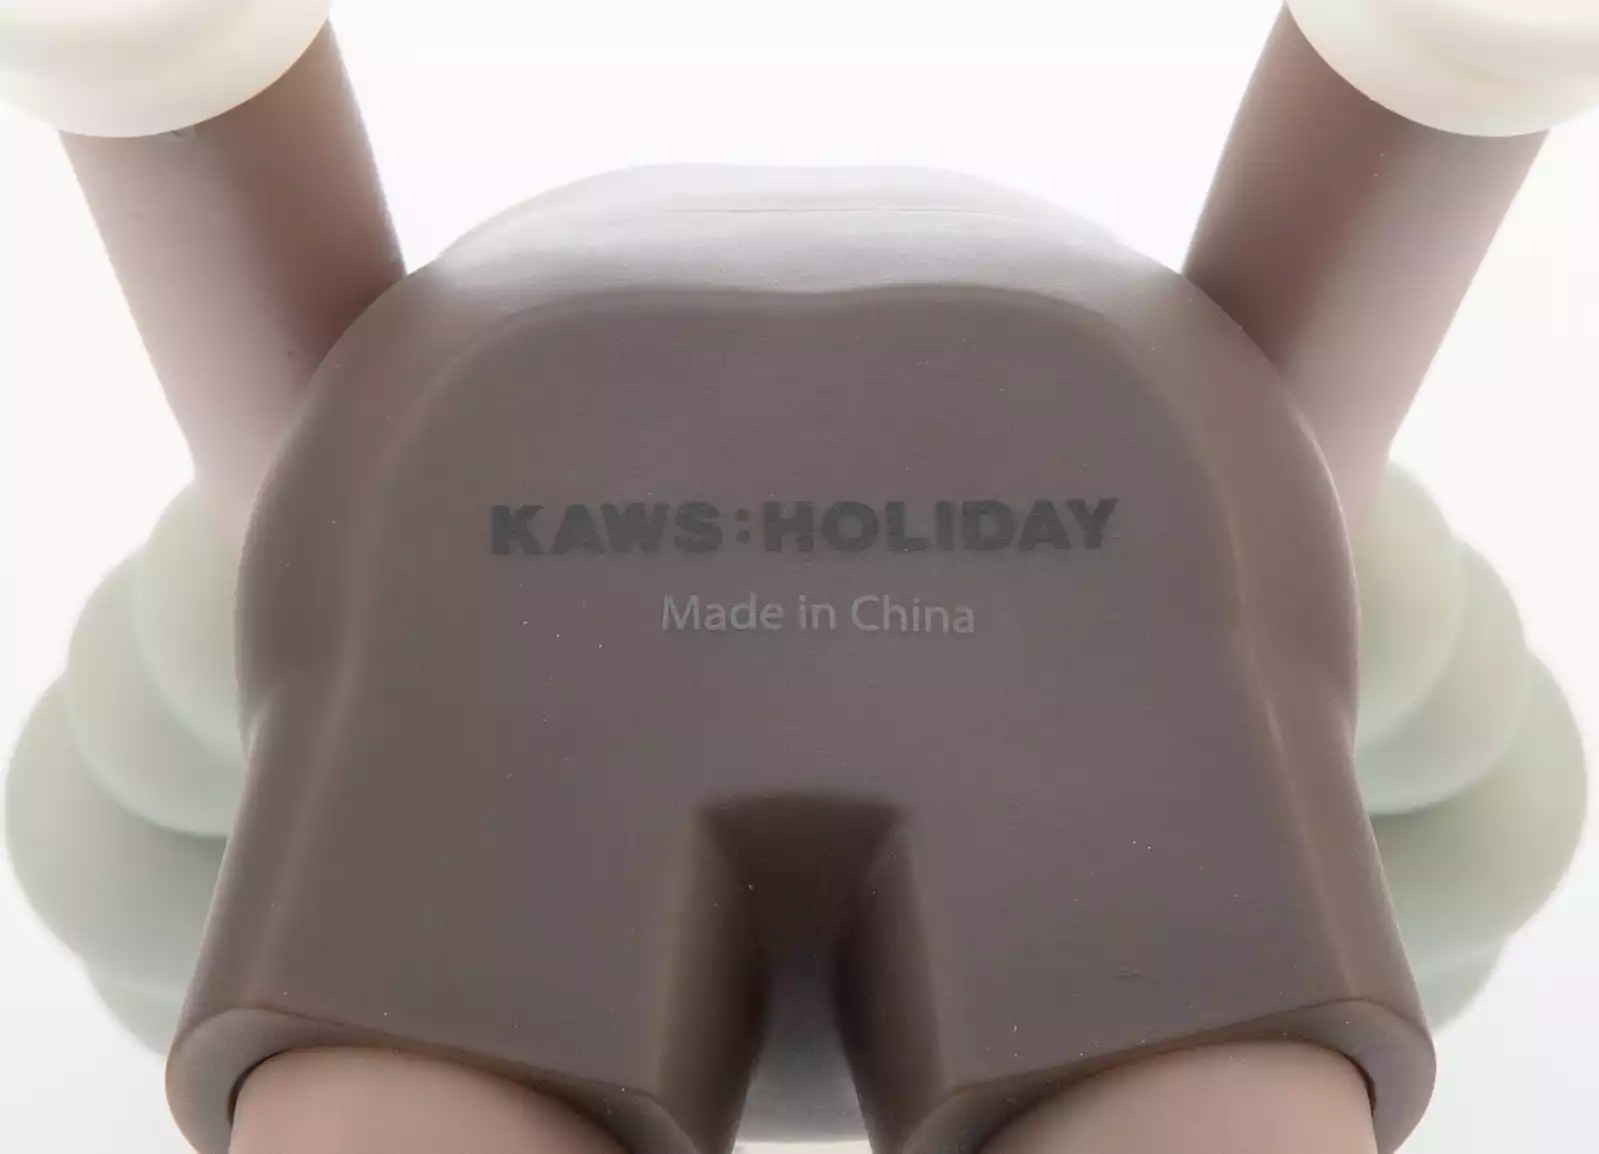 KAWS | KAWS Taipei Holiday Companion (KAWS Brown Companion) (2019) |  Available for Sale | Artsy